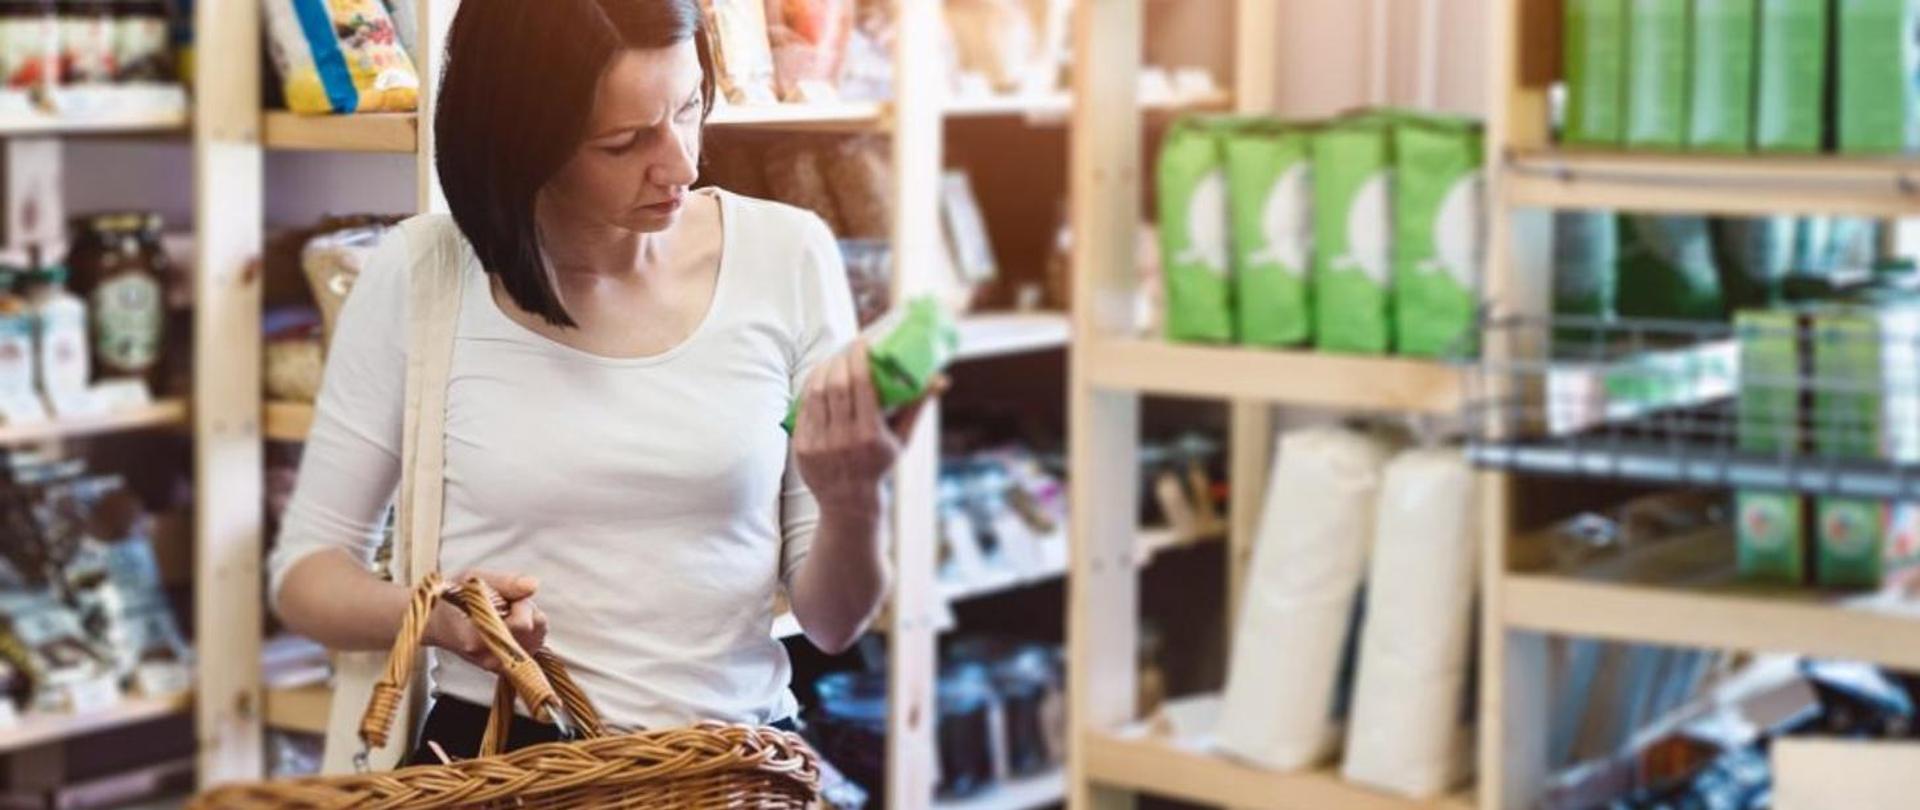 Kobieta trzymająca koszyk wiklinowy i czytająca etykietę produktu przy półce sklepowej